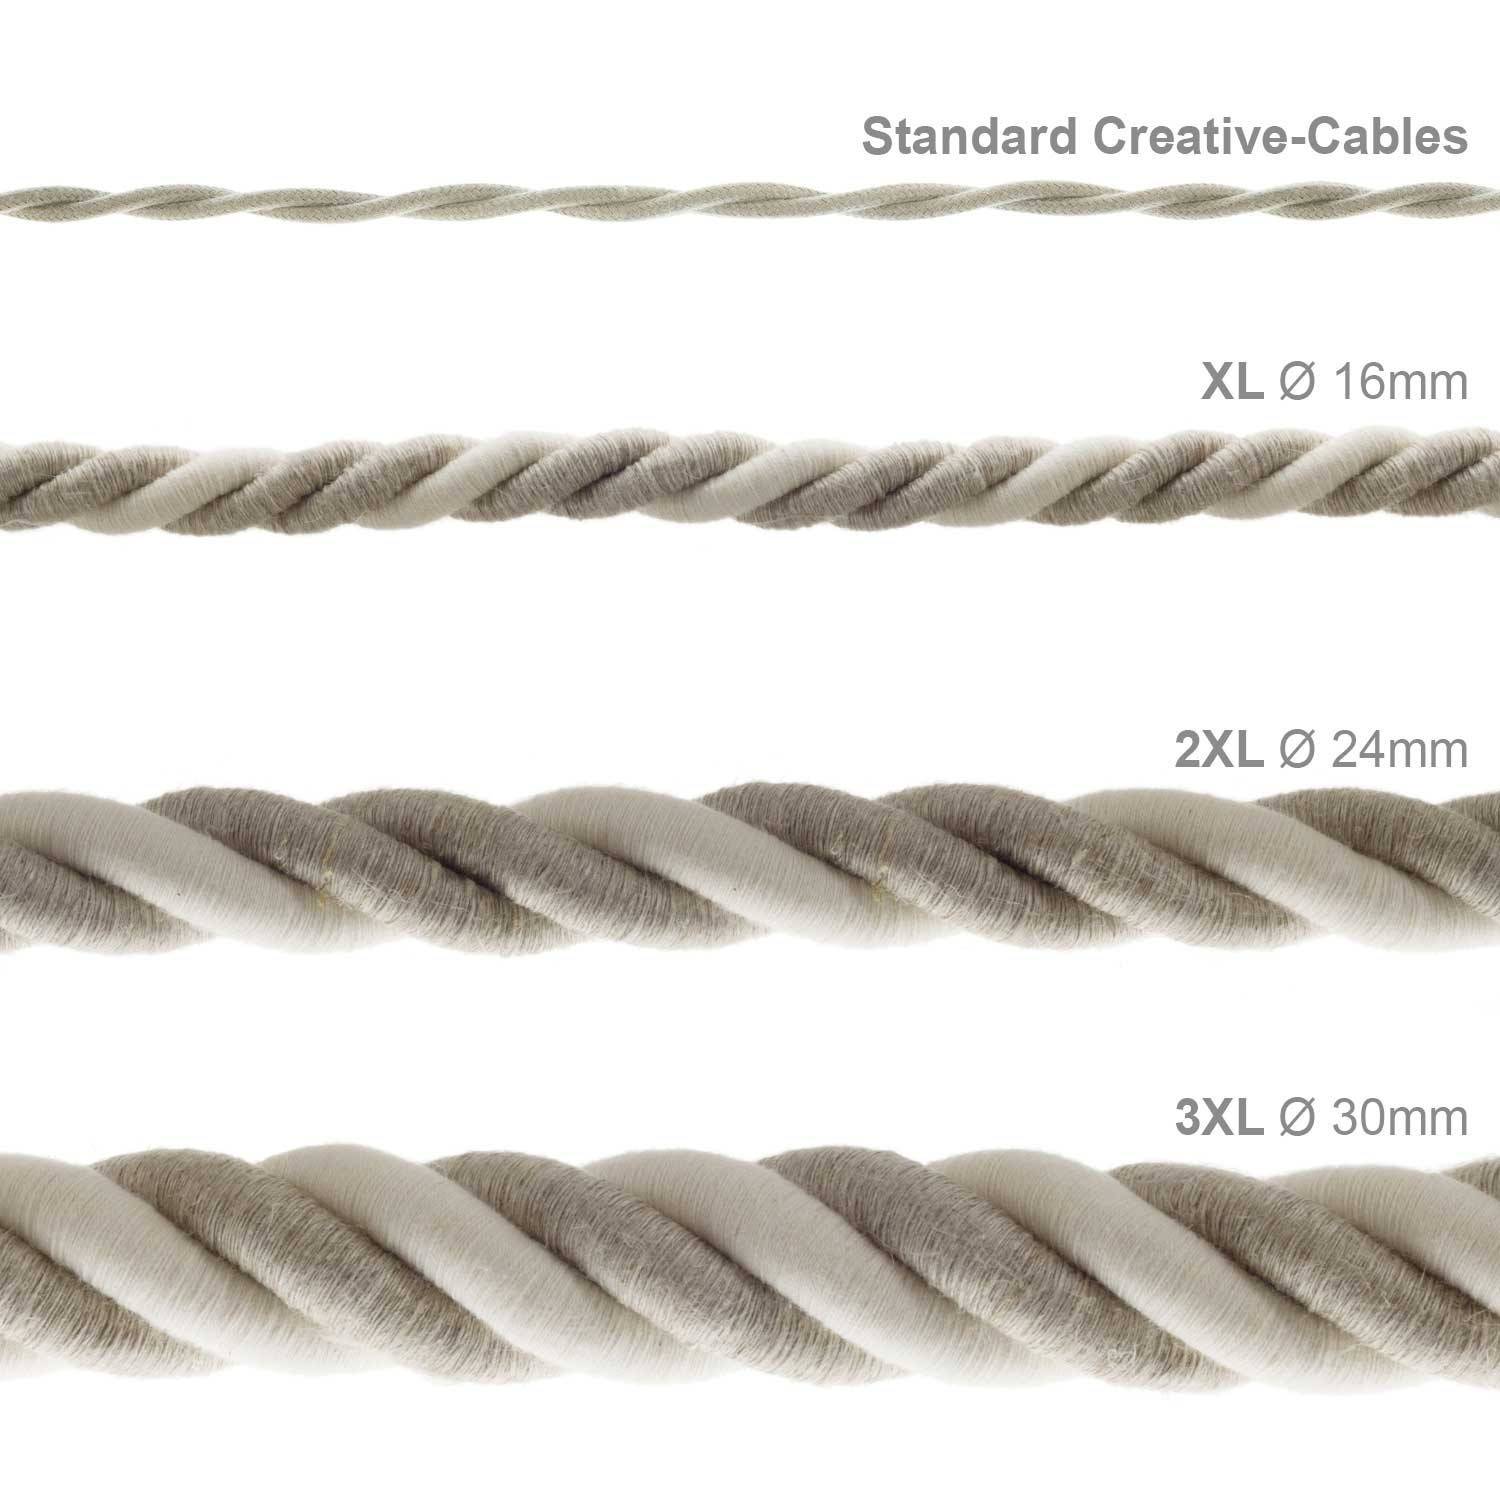 Cordão elétrico 2XL, cabo 3x0,75 revestido em linho natural e algodão cru. Diâmetro de 24 mm.